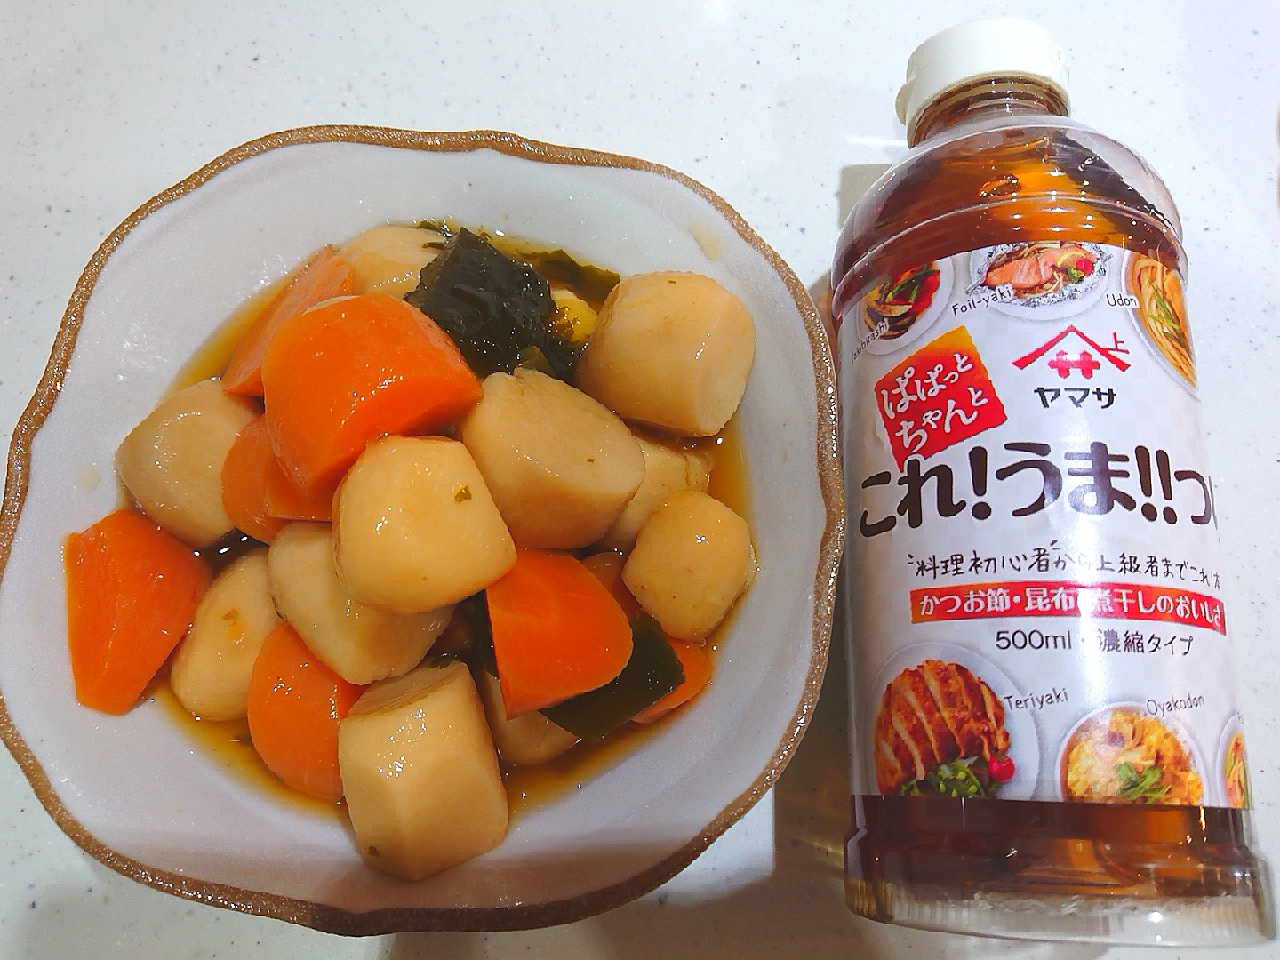 里芋と人参のこれうま煮 きょう何食べた これうまつゆ キャンペーン ヤマサ醤油株式会社